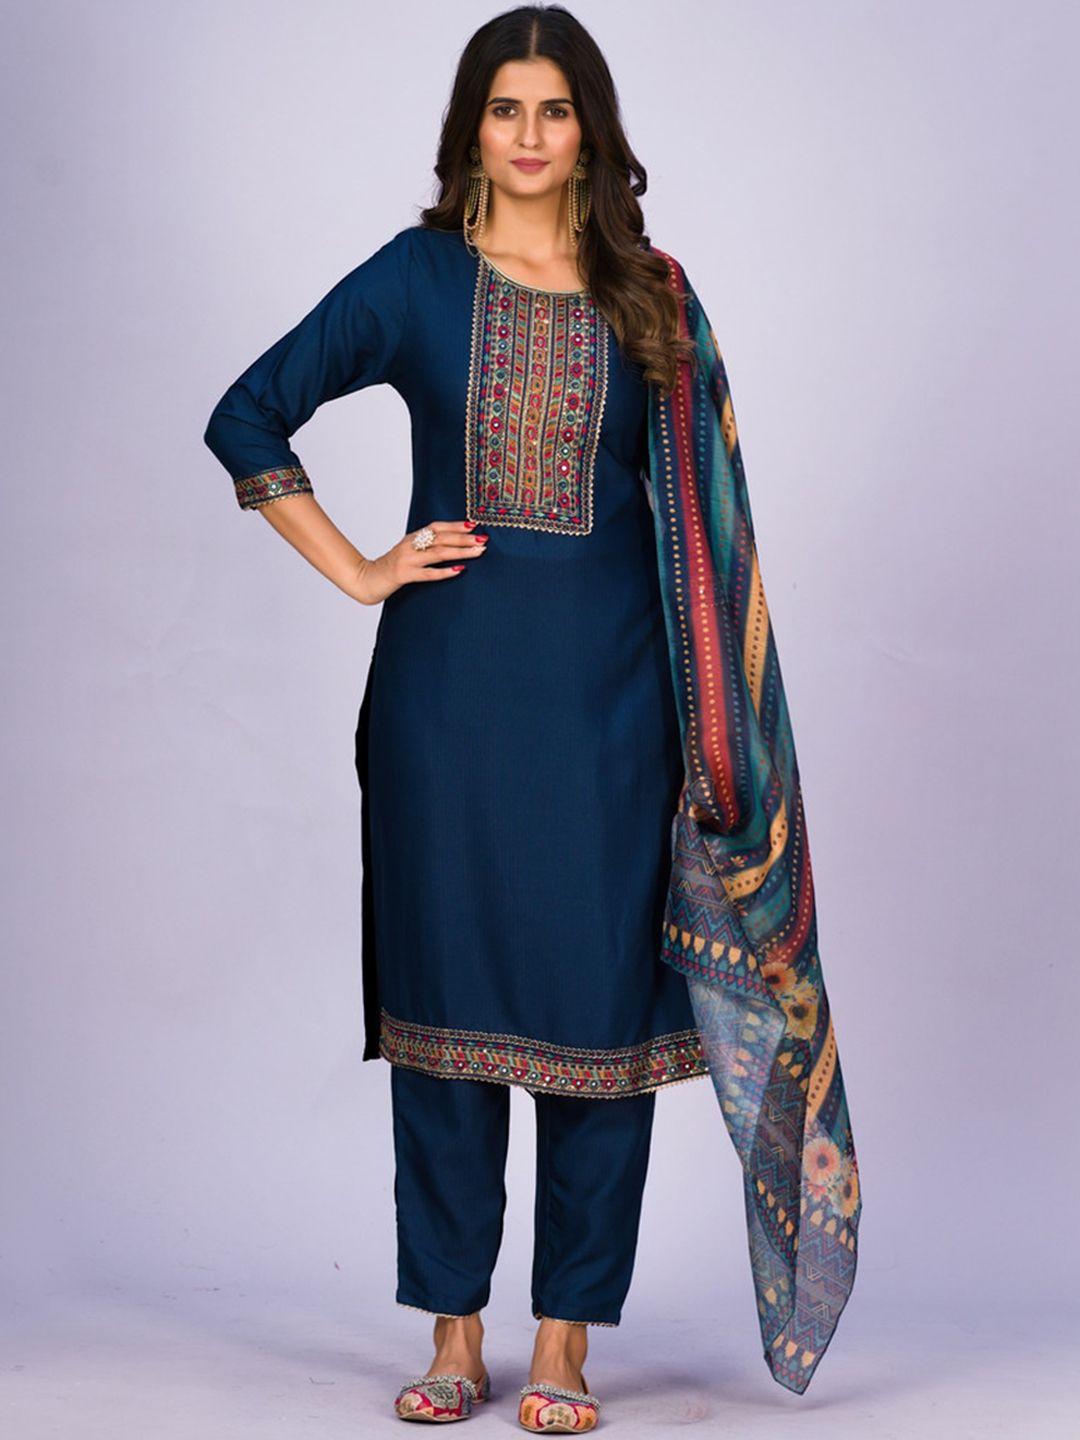 jinax women navy blue floral embroidered regular kurti with pyjamas & with dupatta